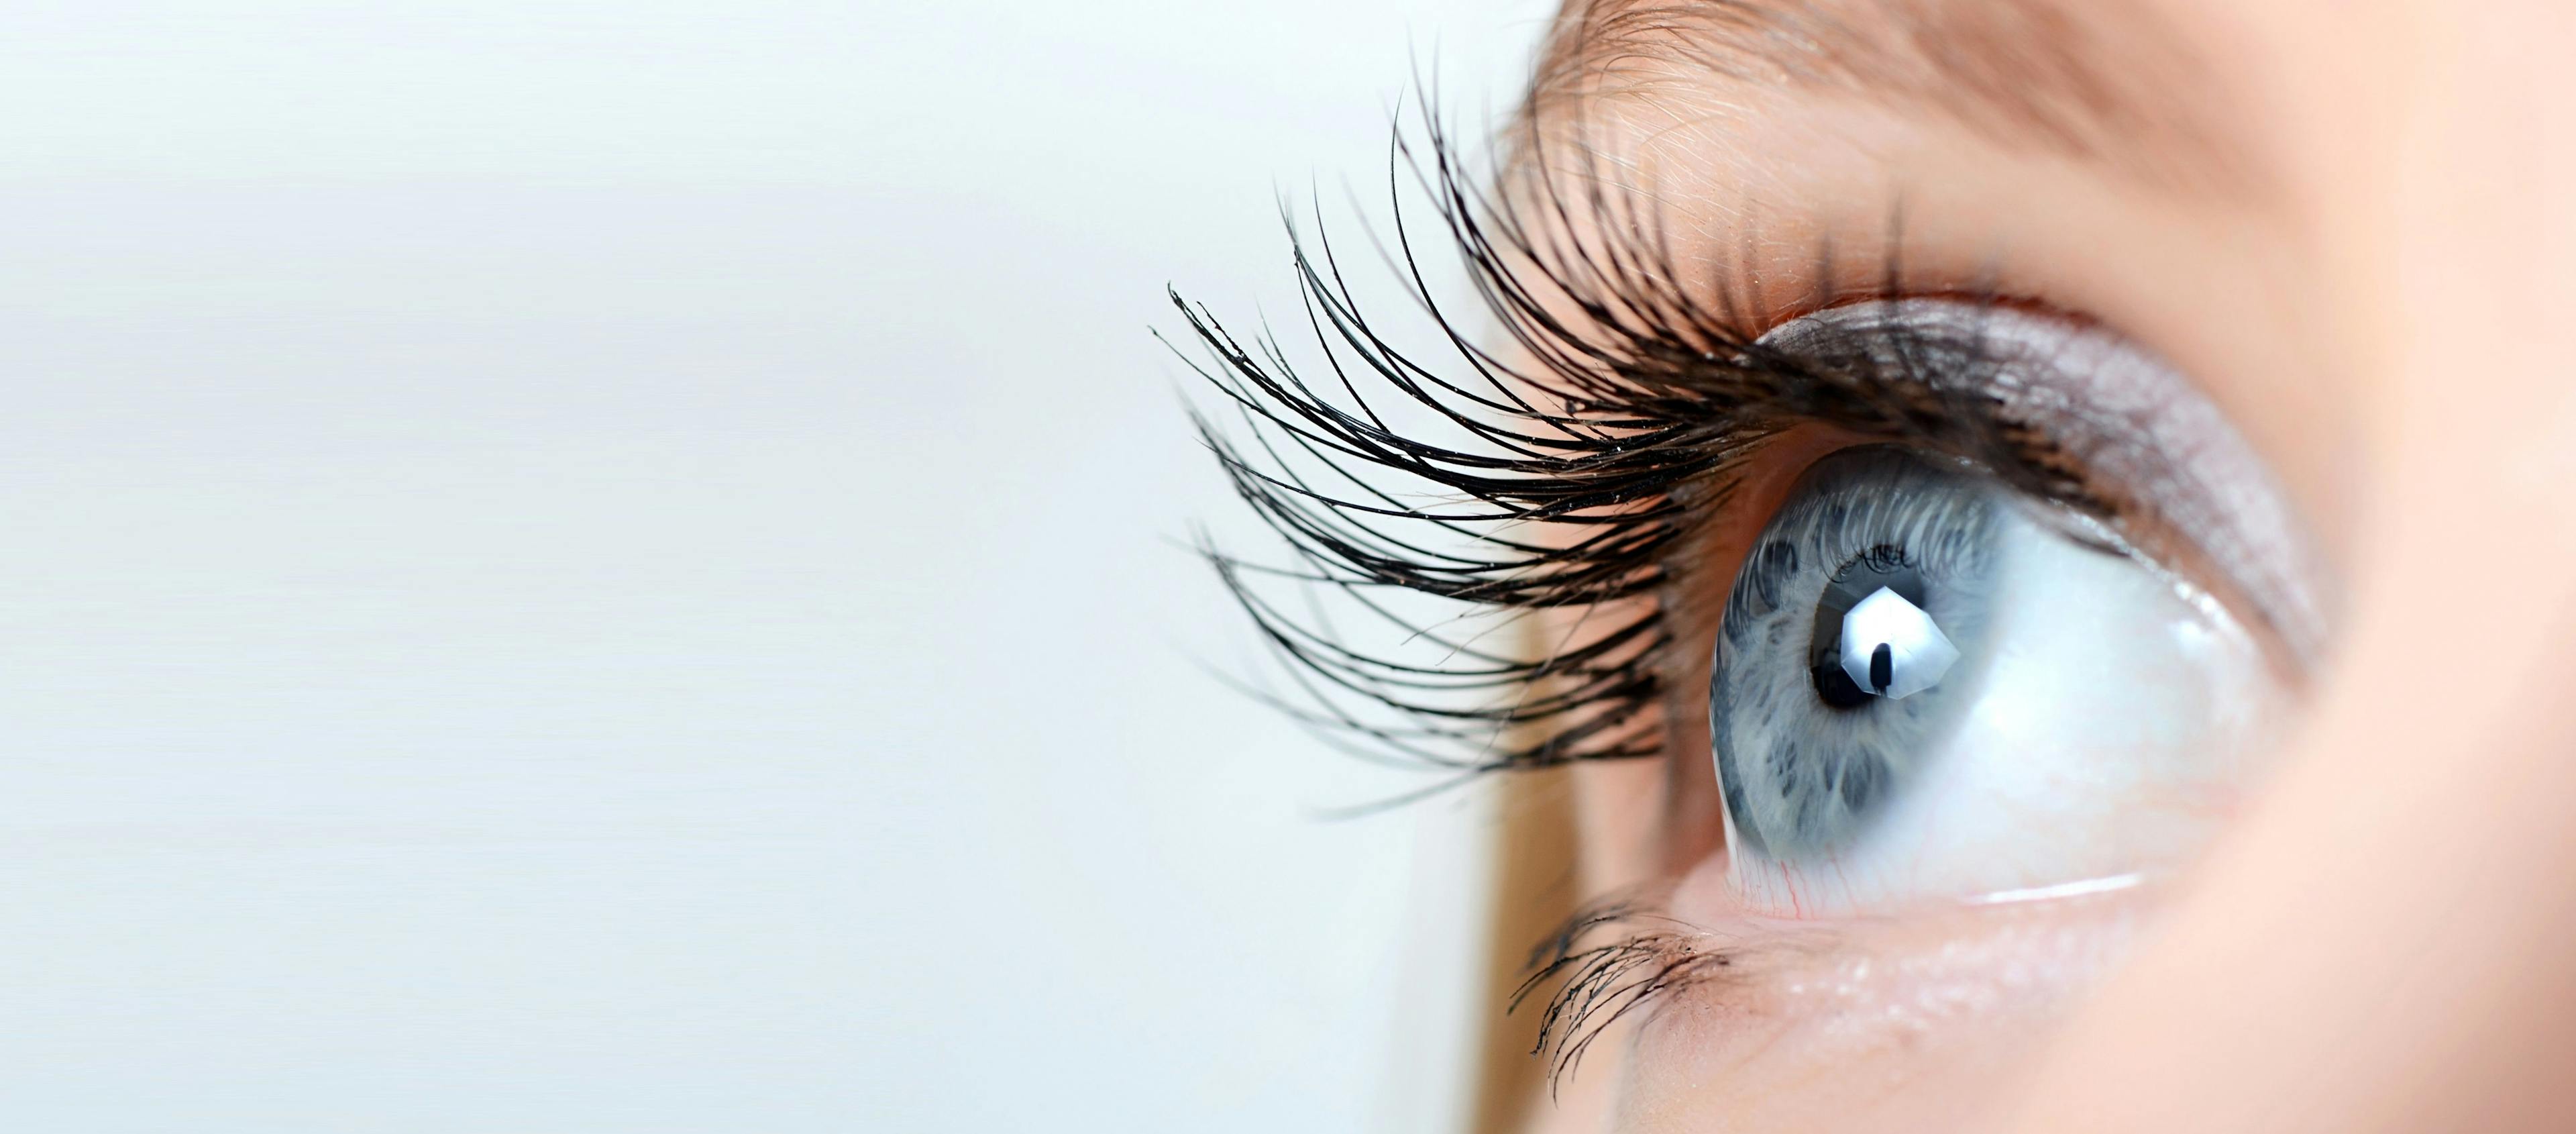 Female eye with long eyelashes close-up | Image credit: Vladimir Voronin - stock.adobe.com